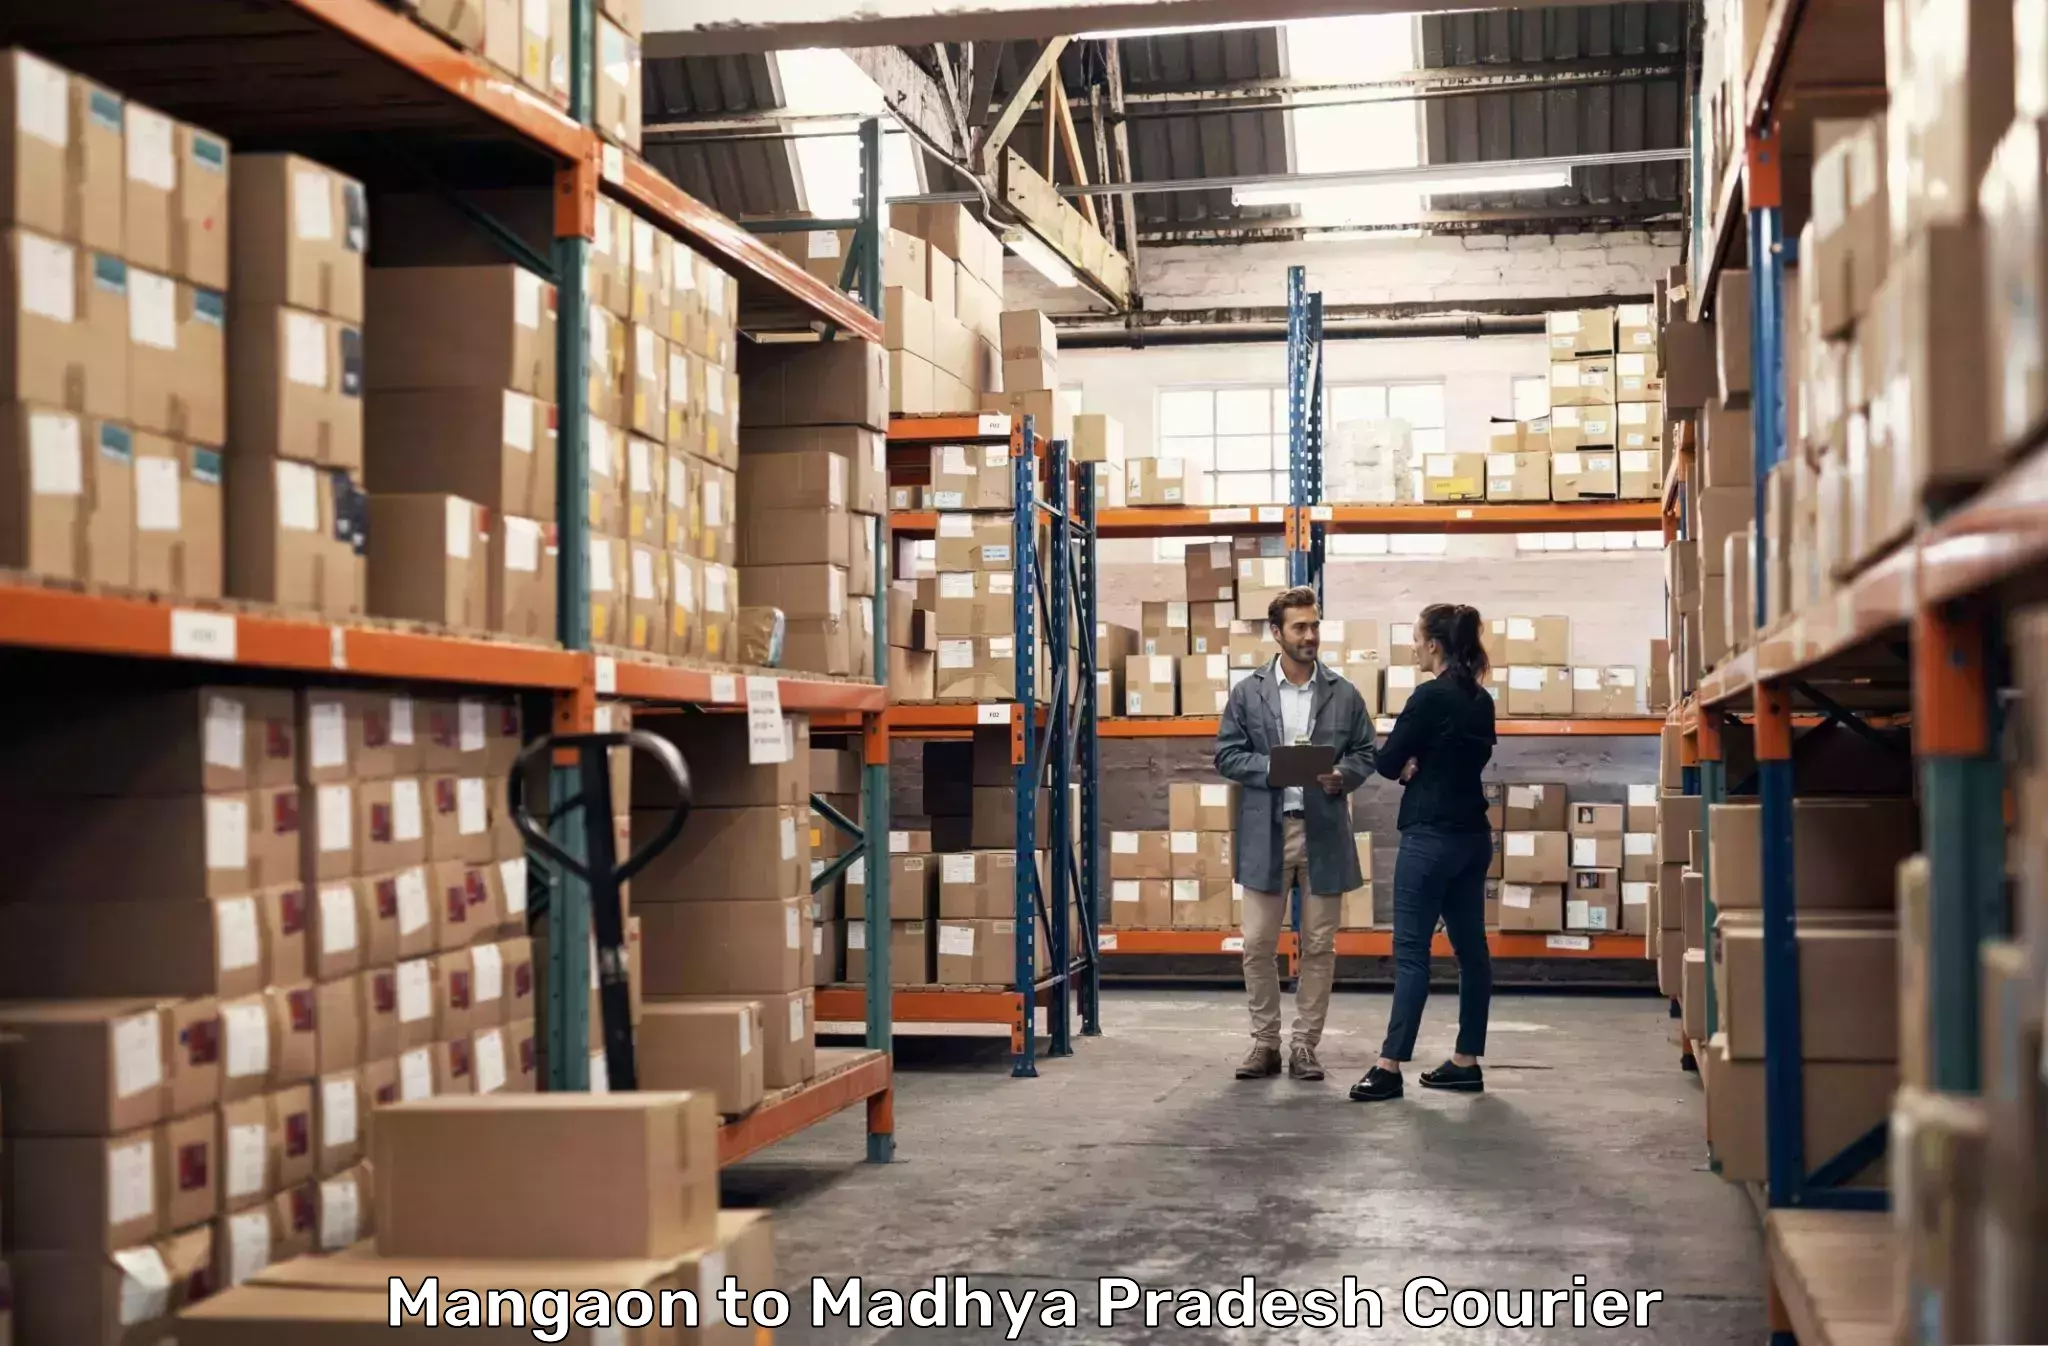 24/7 courier service Mangaon to Madhya Pradesh